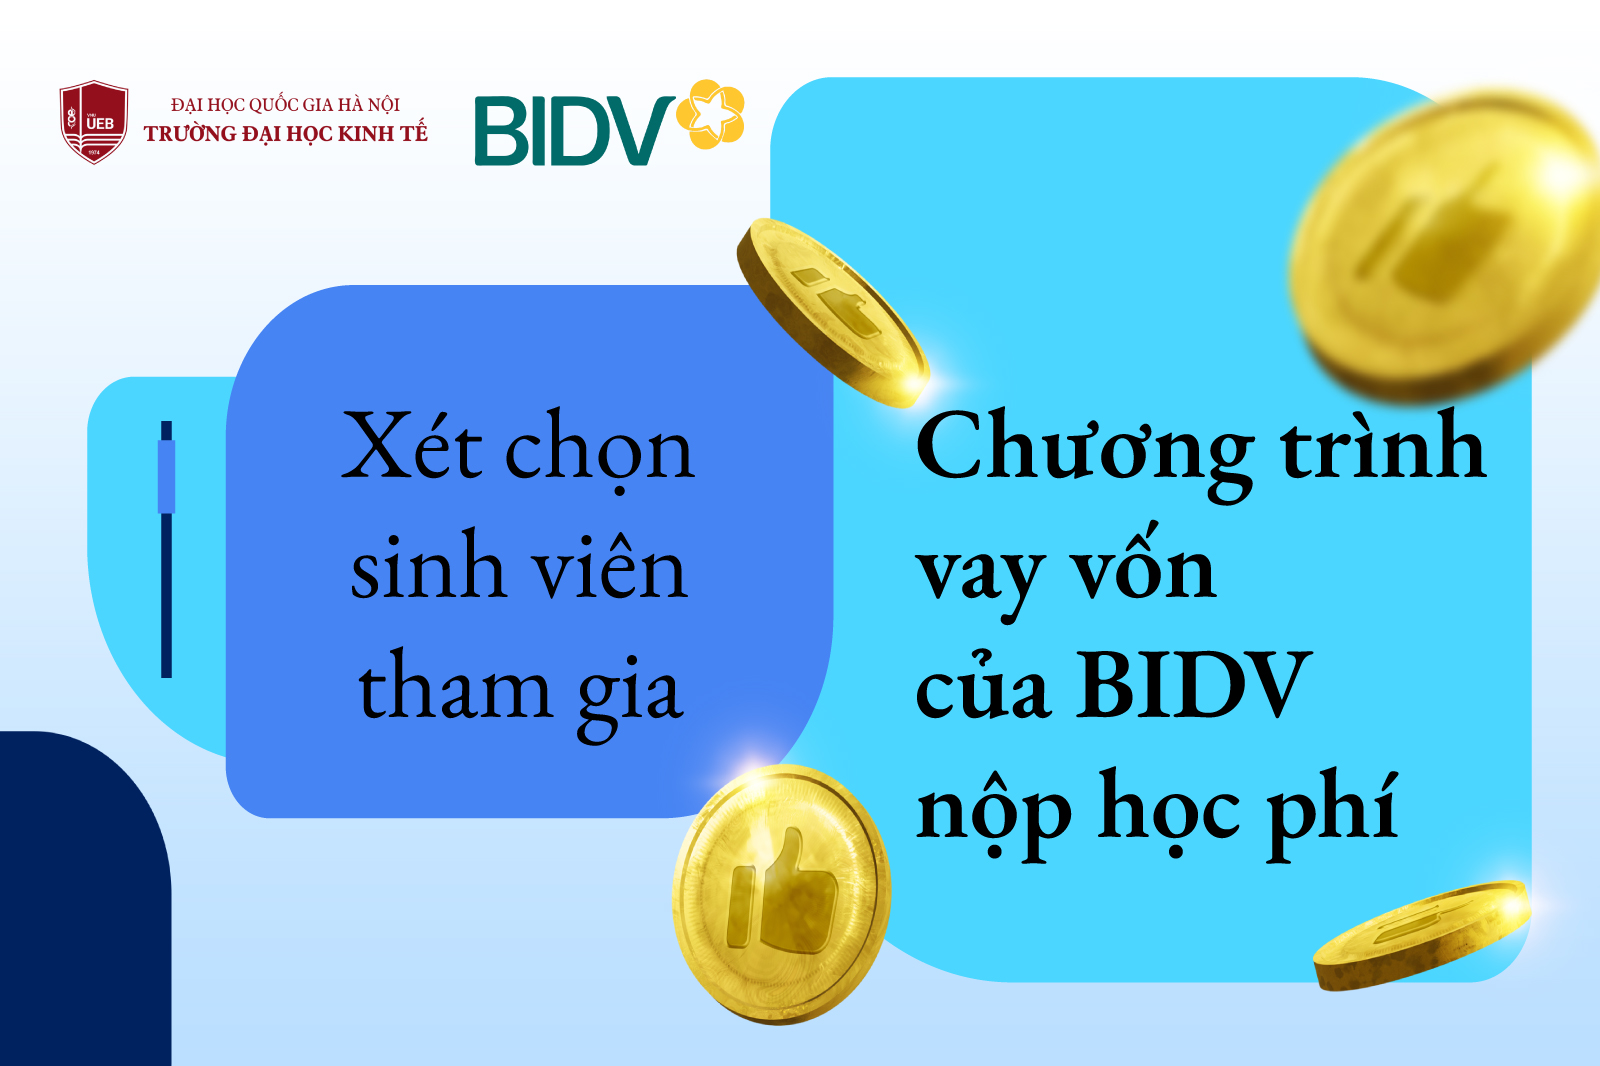 Chương trình vay vốn của BIDV nộp học phí